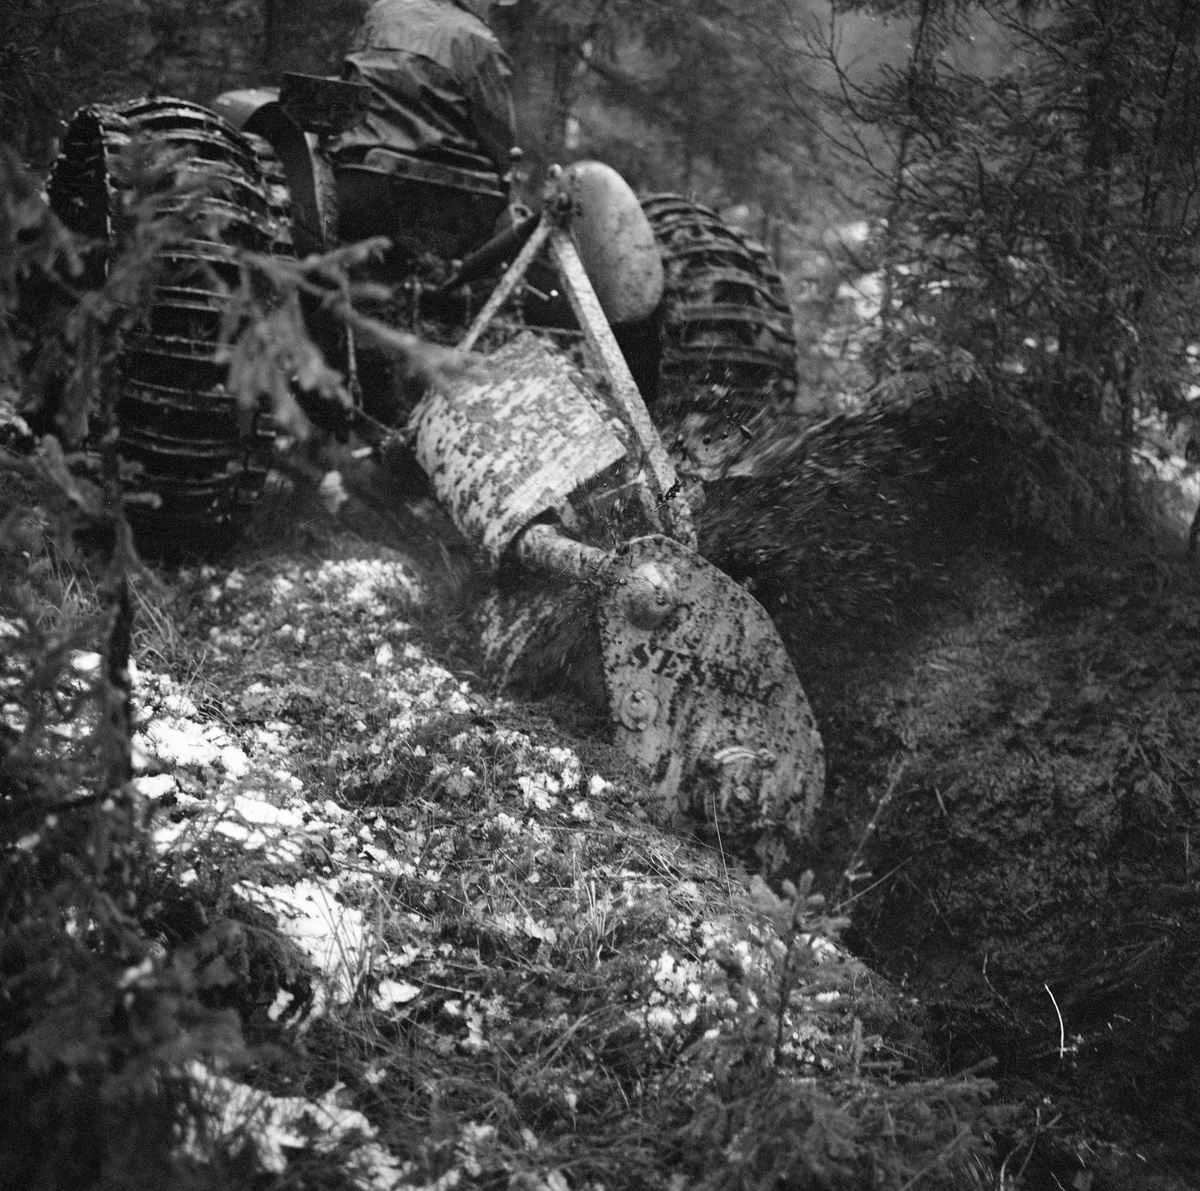 Demonstrasjon av grøfting med traktor og grøftefres under en driftsteknisk orientert skogdag i Strandbygda i Elverum (Hedmark) høsten 1963. Fotografiet viser traktoren og fresen, som var av en type som ble kalt «Sesam», for å poengtere at den kunne gjøre underverker i myr som skulle dreneres. Slike grøftefreser ble brukt til å etablere grunne eller halvdjupe grøfter i myr. Fresen var lagd av stål. Det arbeidende organet var en skovl (rotor) med diameter på cirka 70 centimeter, og med tre utskiftbare kniver. Fresen kunne kjøres med to hastigheter. Den arbeidet vinkelrett på grøftenes lengderetning og trekkraftas fartsretning. Massen ble kastet mot ei av sidene. Under ideelle forhold kunne denne maskinen opparbeide om lag 1 000 meter 30 centimeter djup grøft i løpet av en time. Grøftefresen måtte ofte kjøres to ganger i samme trasé for å etablere ei god grøft med dybde på opptil 50 centimeter. Grøftefresen kunne ikke brukes i myr der skovlknivene kunne treffe stein eller røtter.